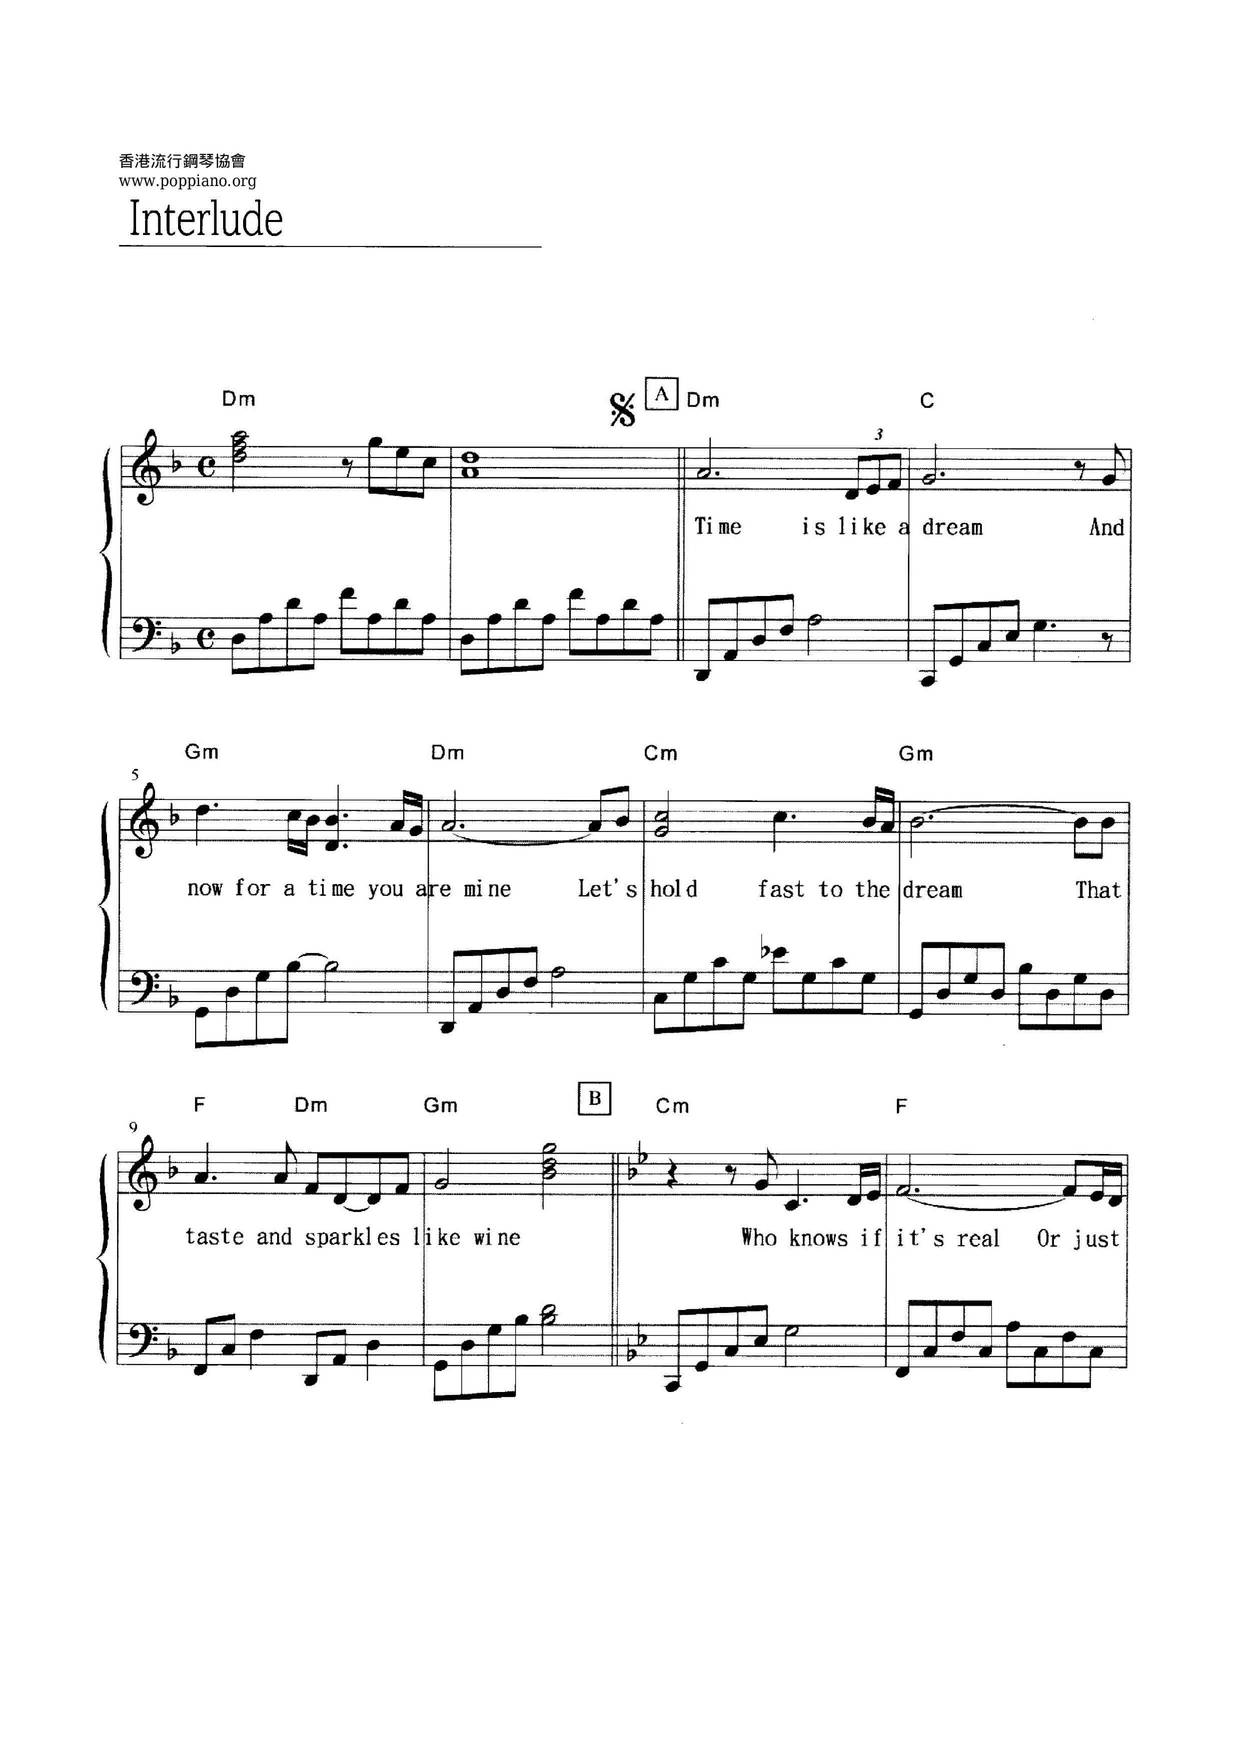 Interlude Score